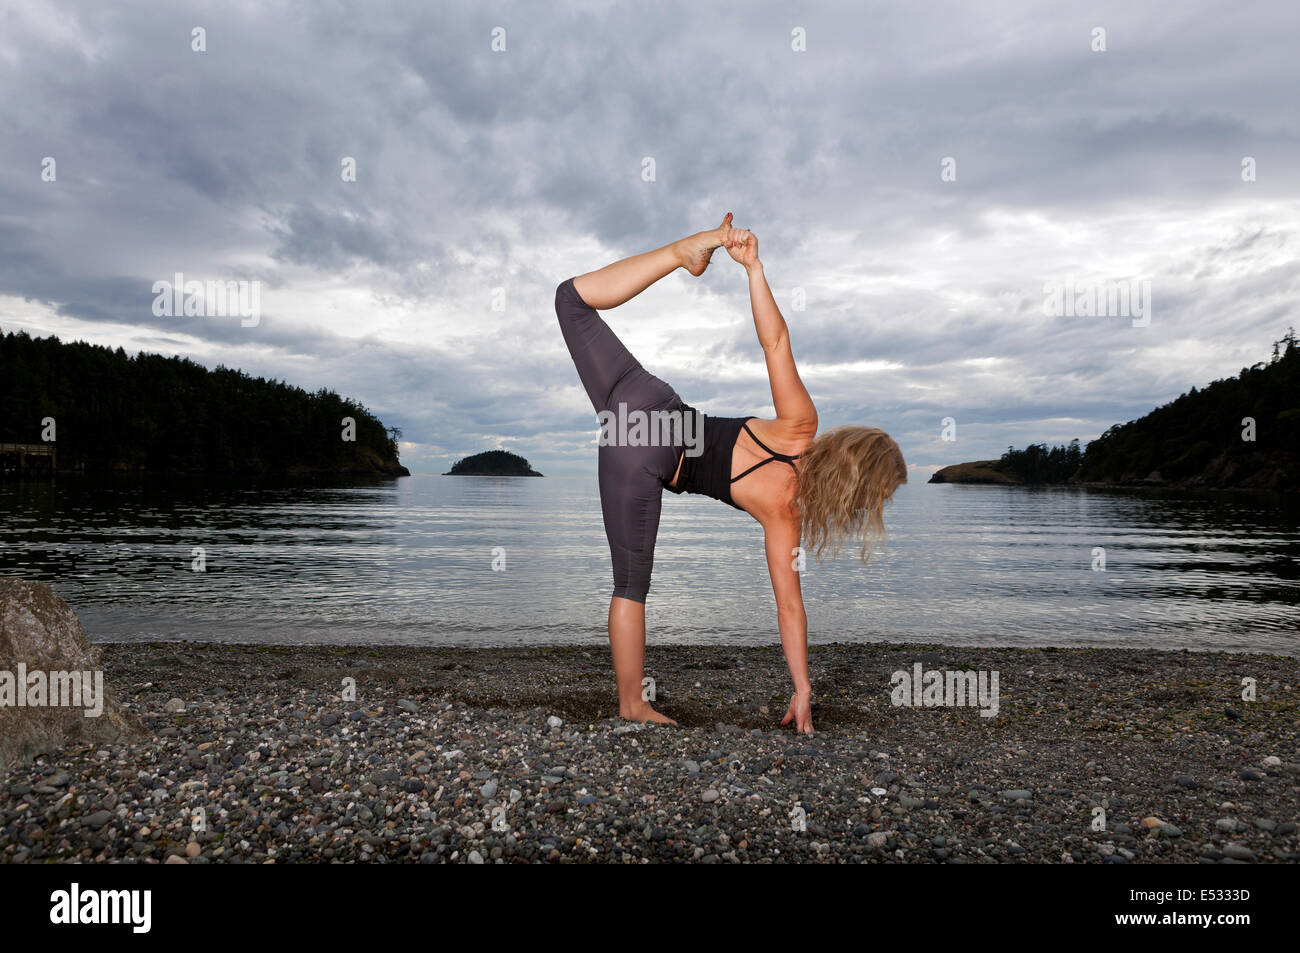 WASHINGTON - Yoga instructor Carly Hayden warming up. Stock Photo